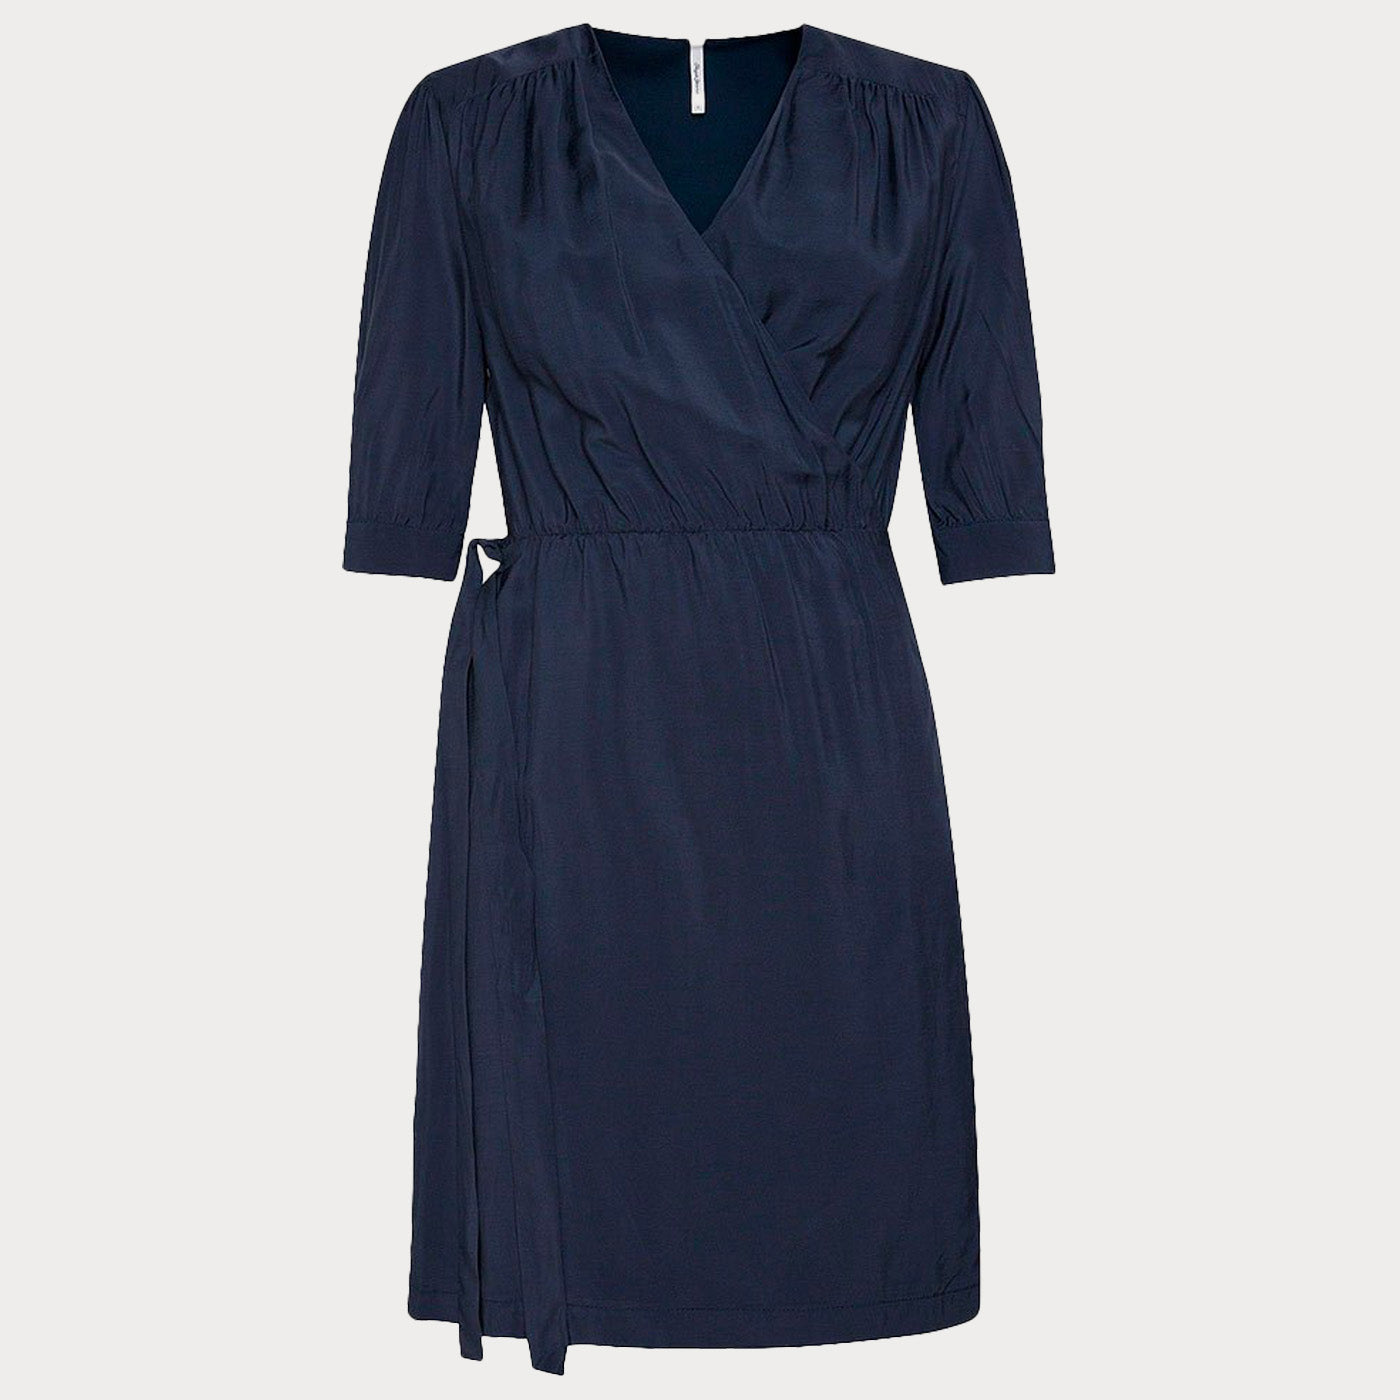 Дамска ежедневна рокля PEPE JEANS, в син цвят,  лека материя със средна дължина, среден ръкав.